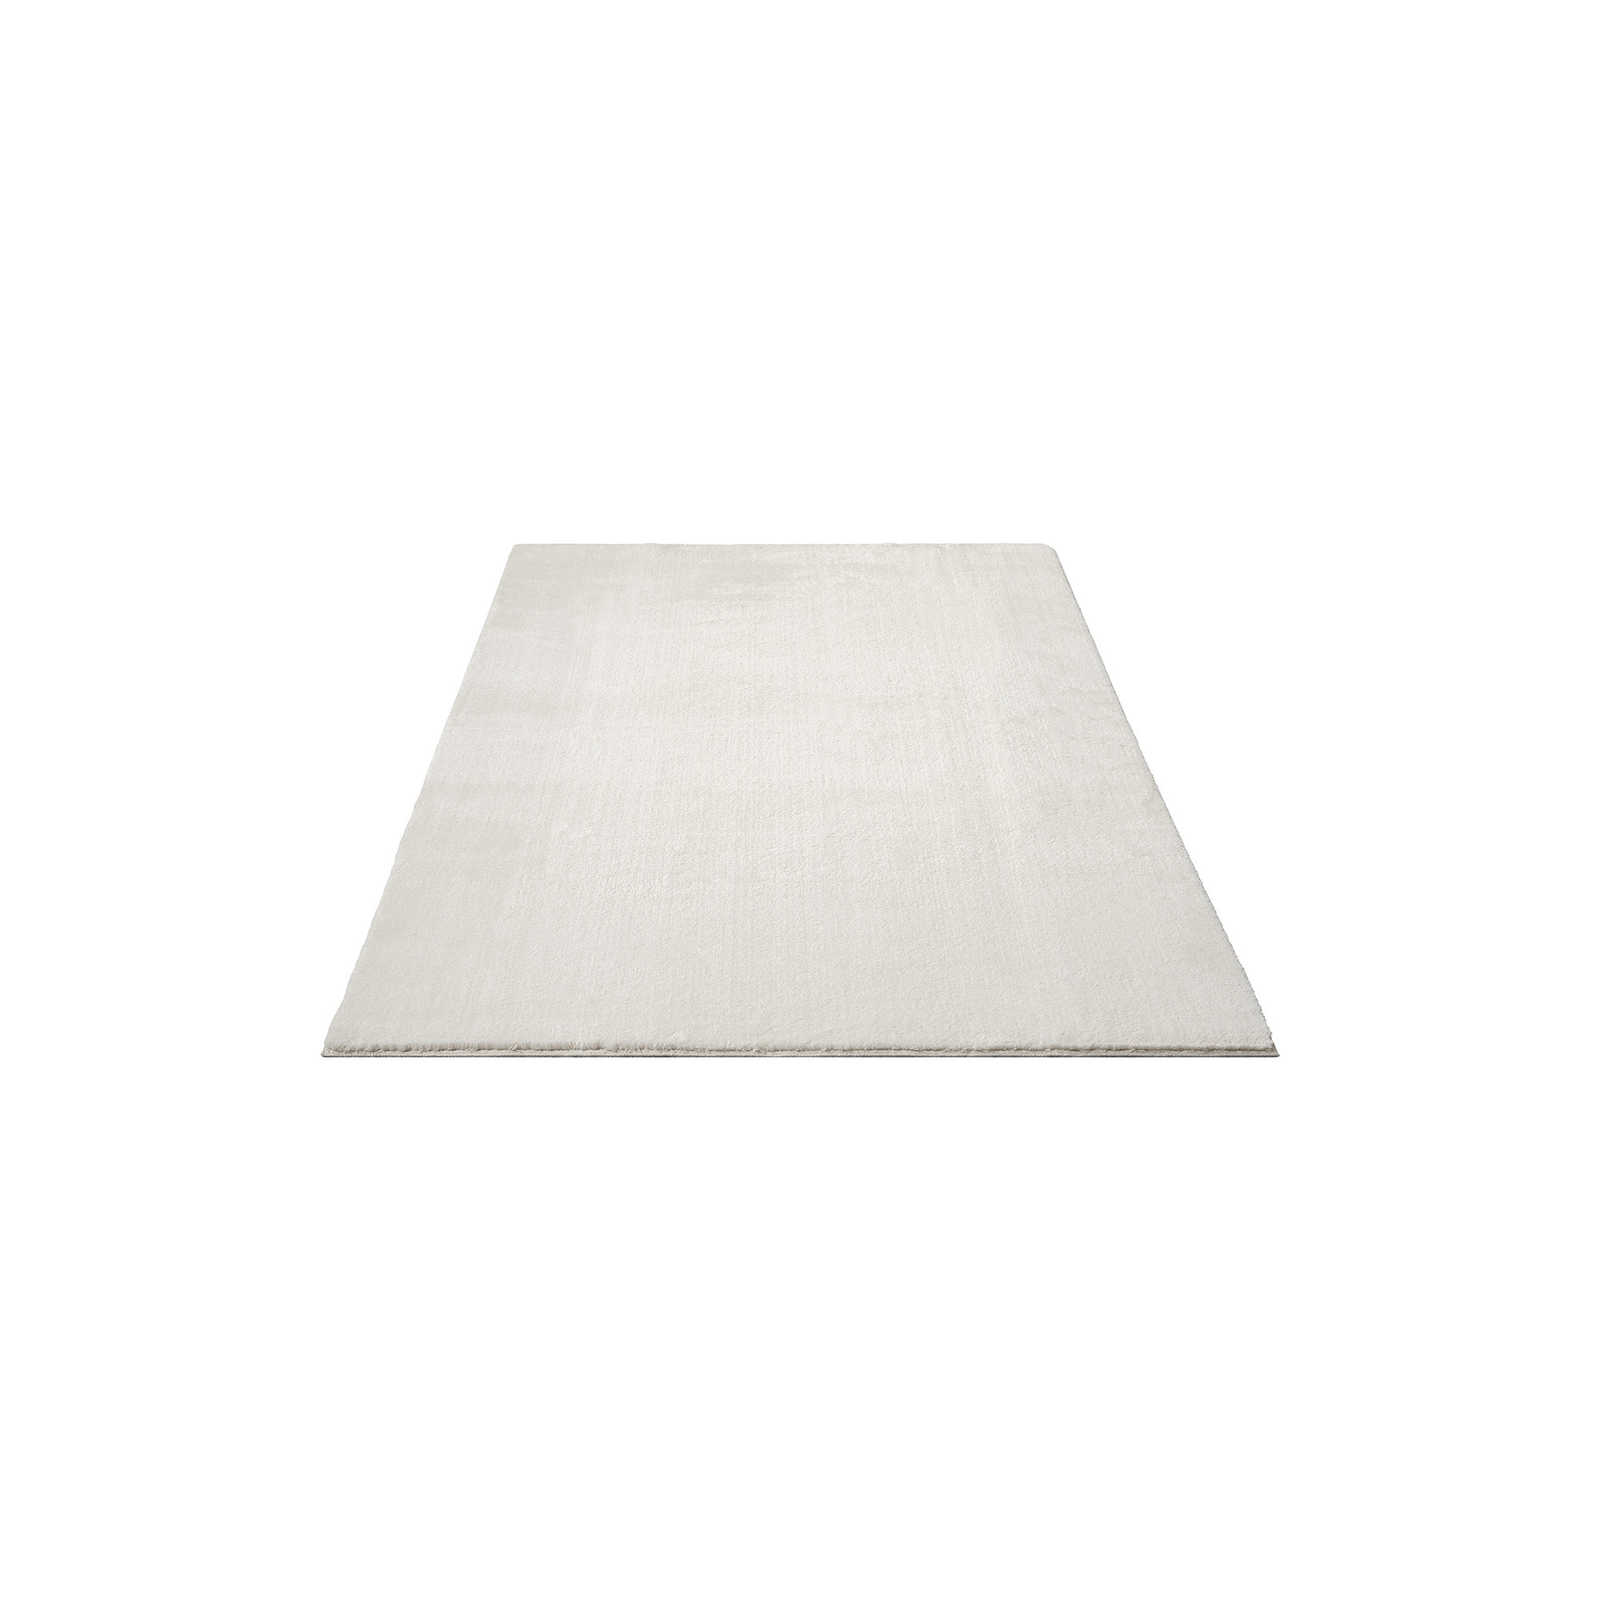 Fashionable high pile carpet in cream - 200 x 140 cm
